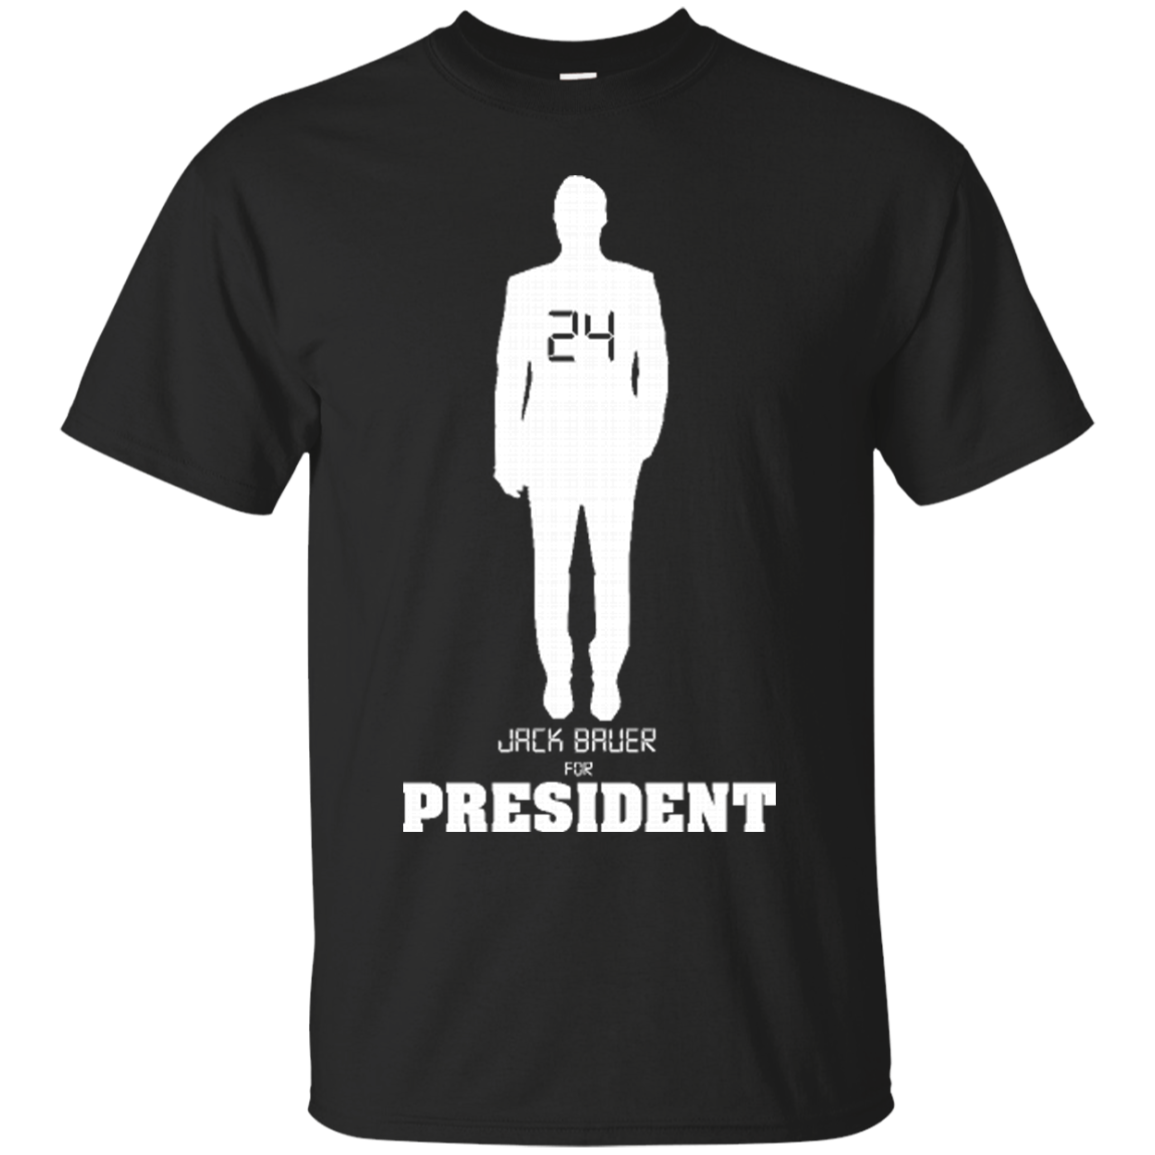 Jack Bauer For President Jack Bauer Shirts - Teesmiley